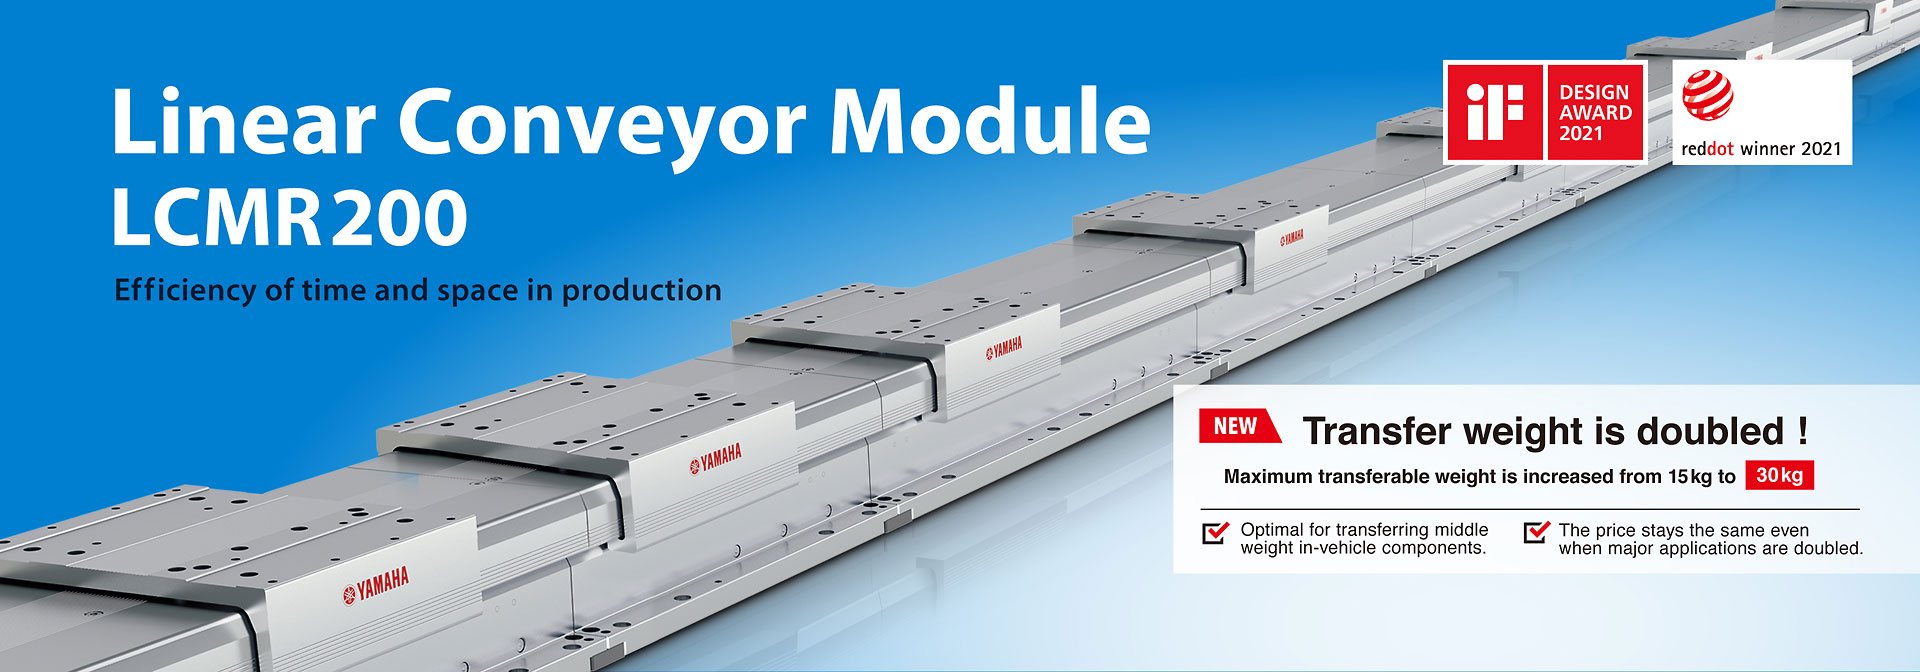 Linear Conveyor Module LCMR200